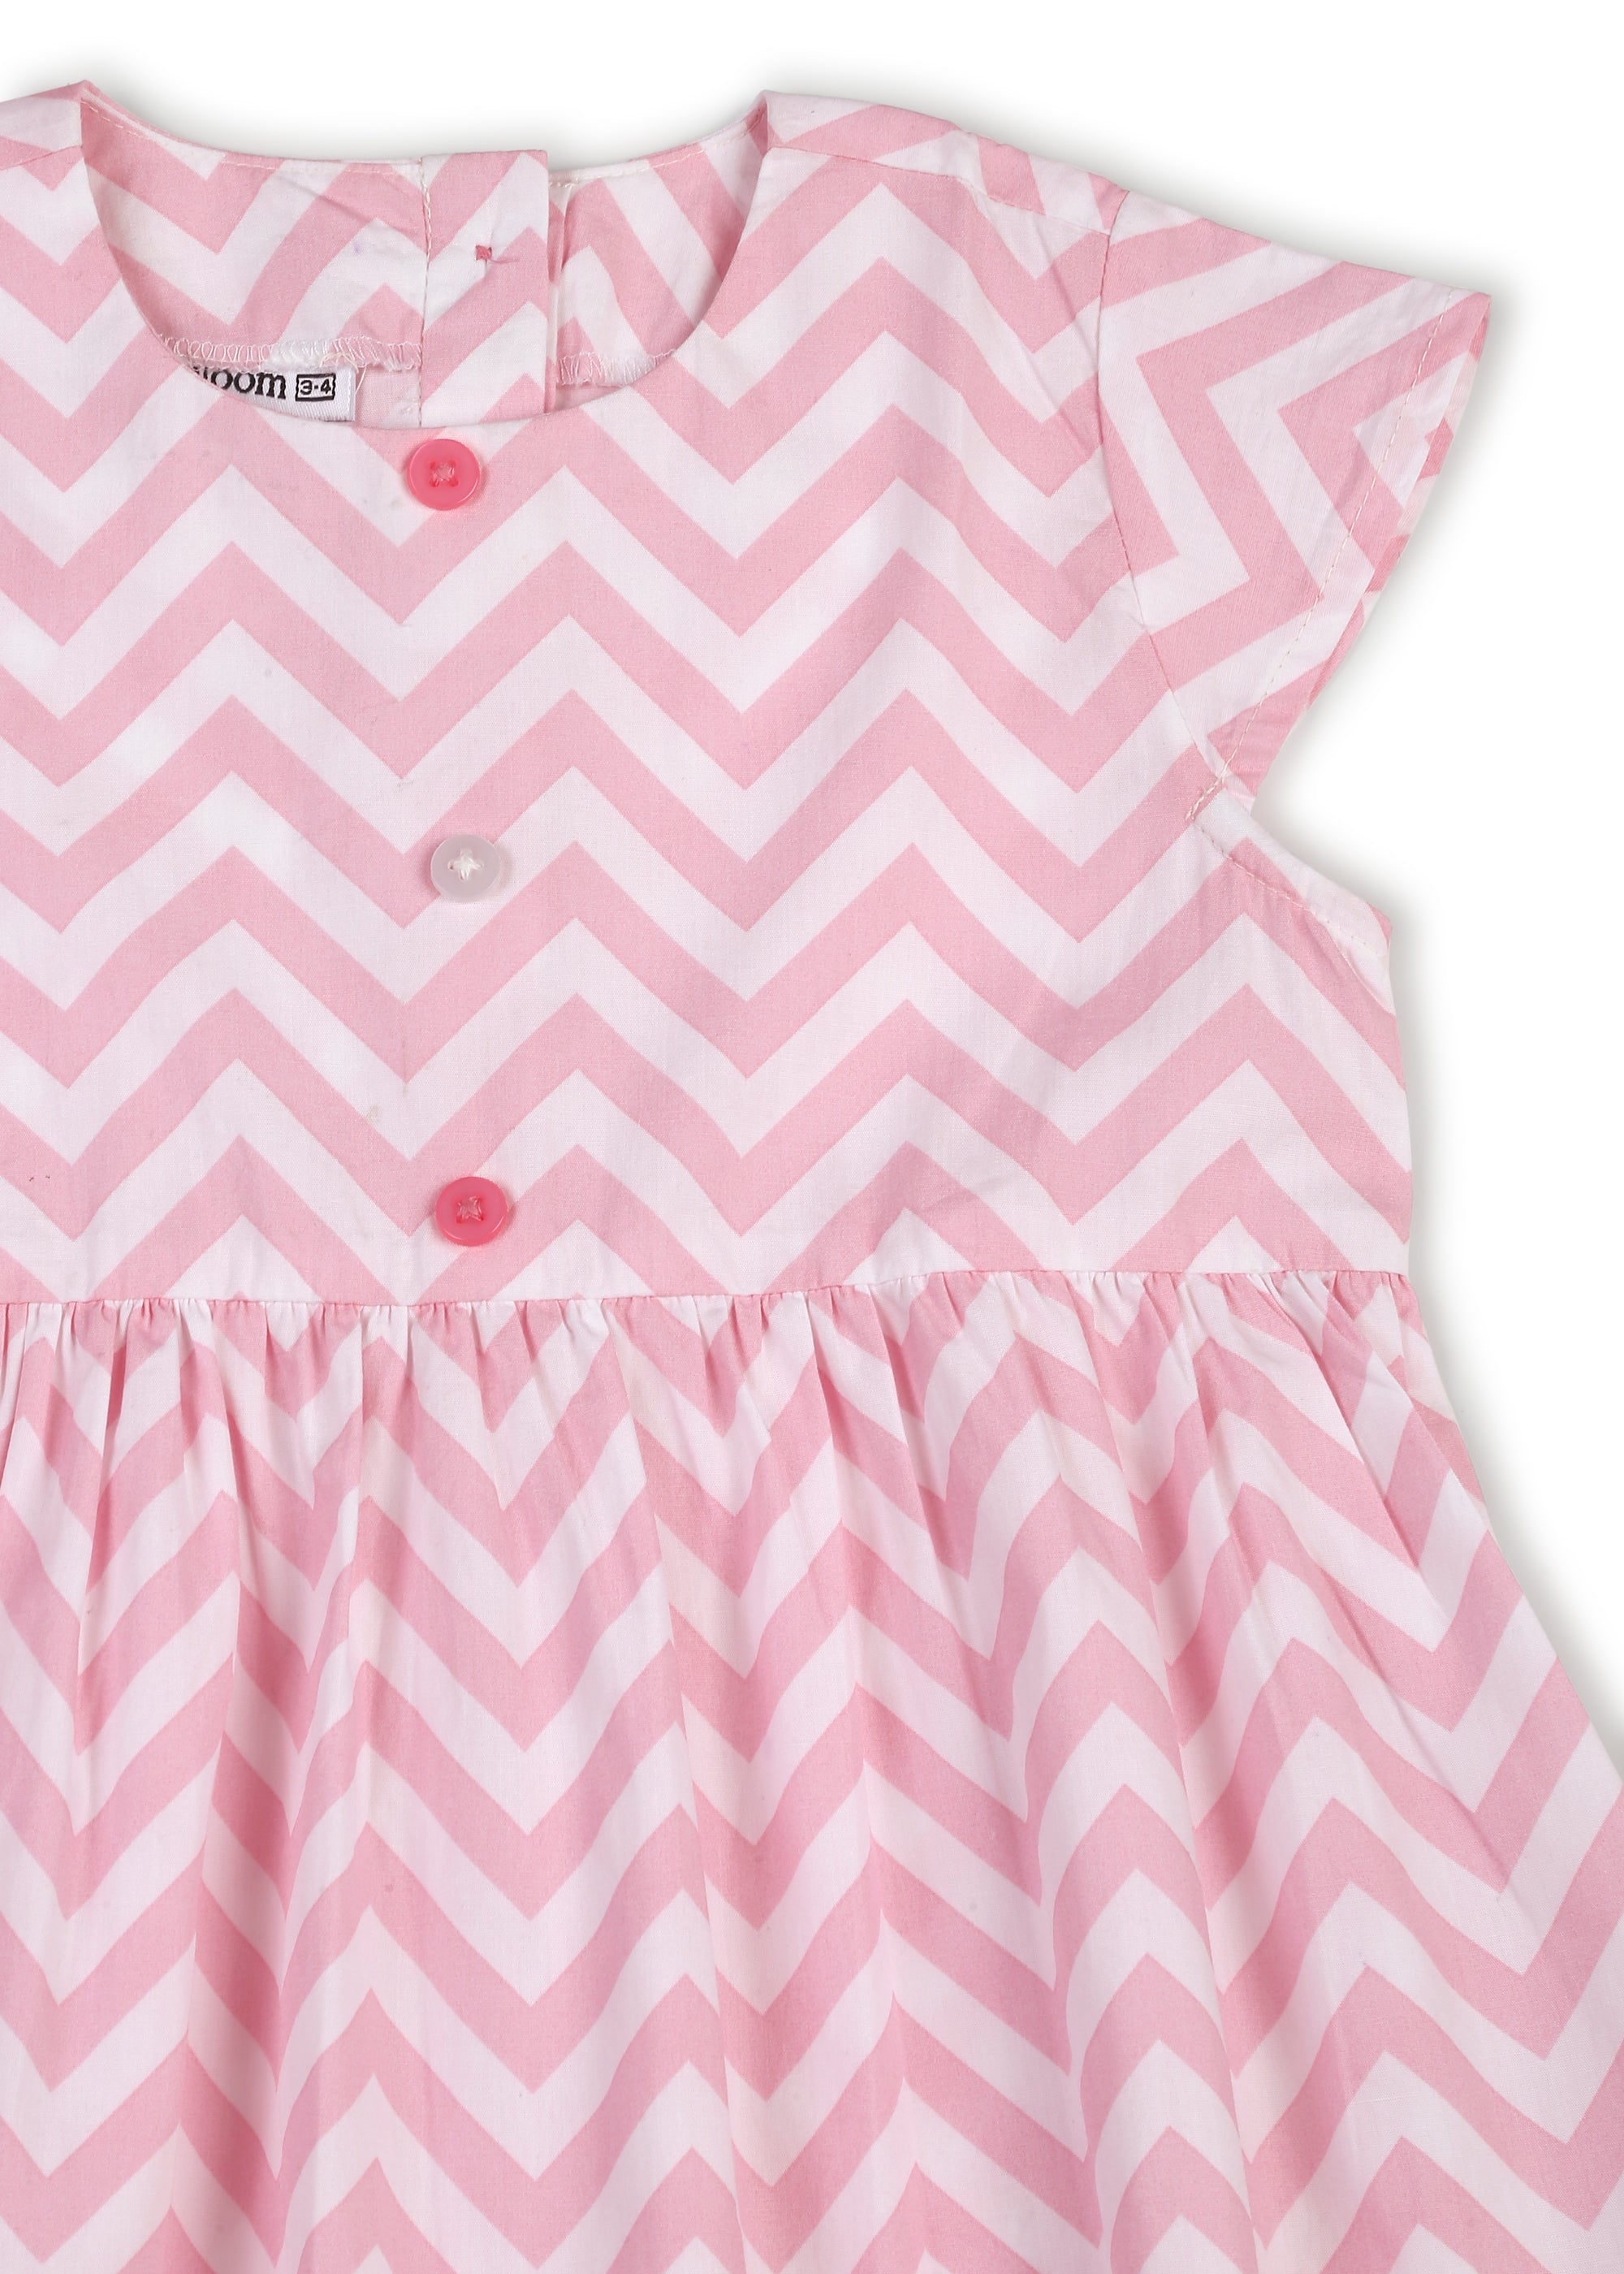 Diagonal Striped Girl's Dress